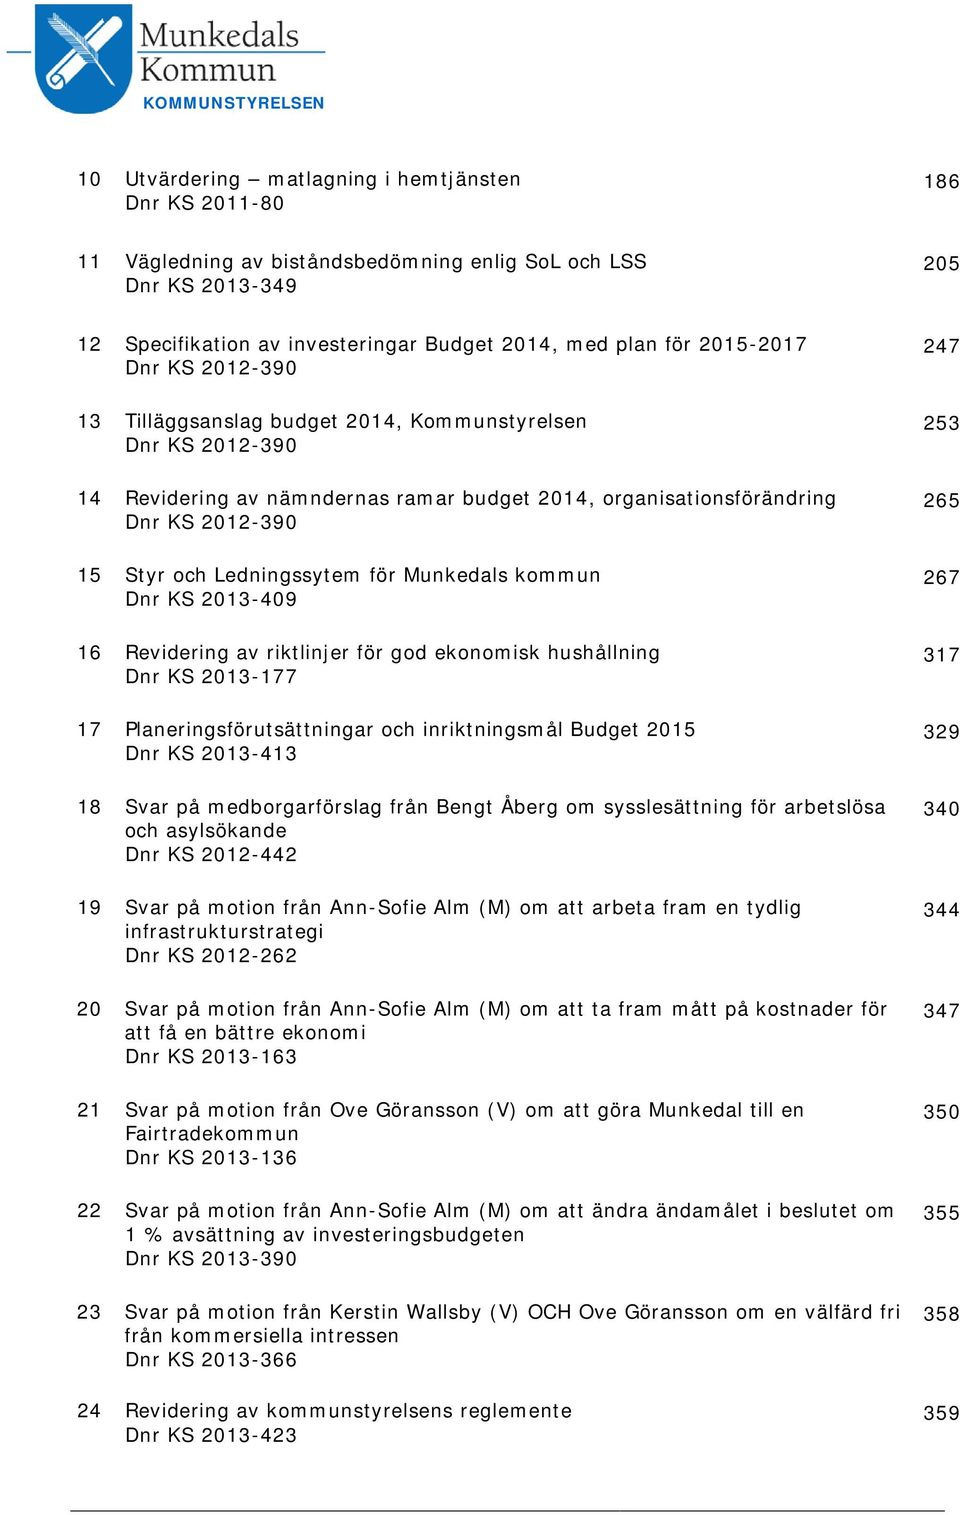 Ledningssytem för Munkedals kommun Dnr KS 2013-409 16 Revidering av riktlinjer för god ekonomisk hushållning Dnr KS 2013-177 17 Planeringsförutsättningar och inriktningsmål Budget 2015 Dnr KS